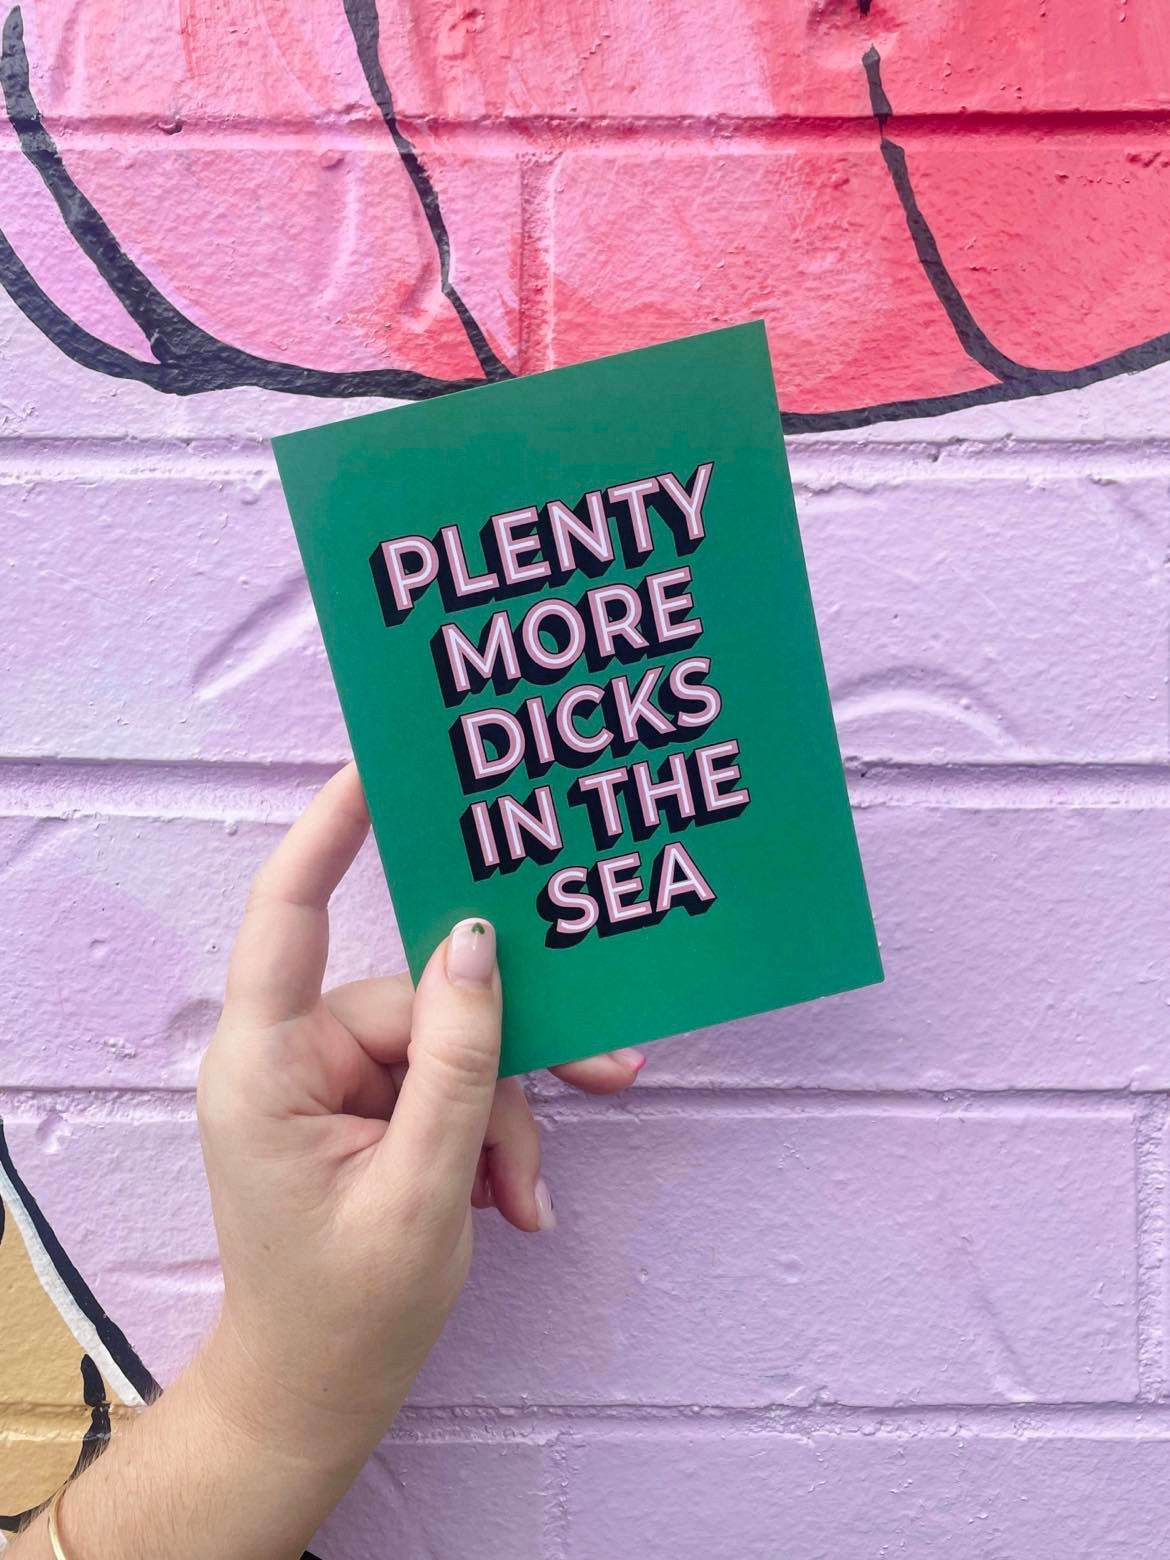 CARD Plenty More Dicks In The Sea